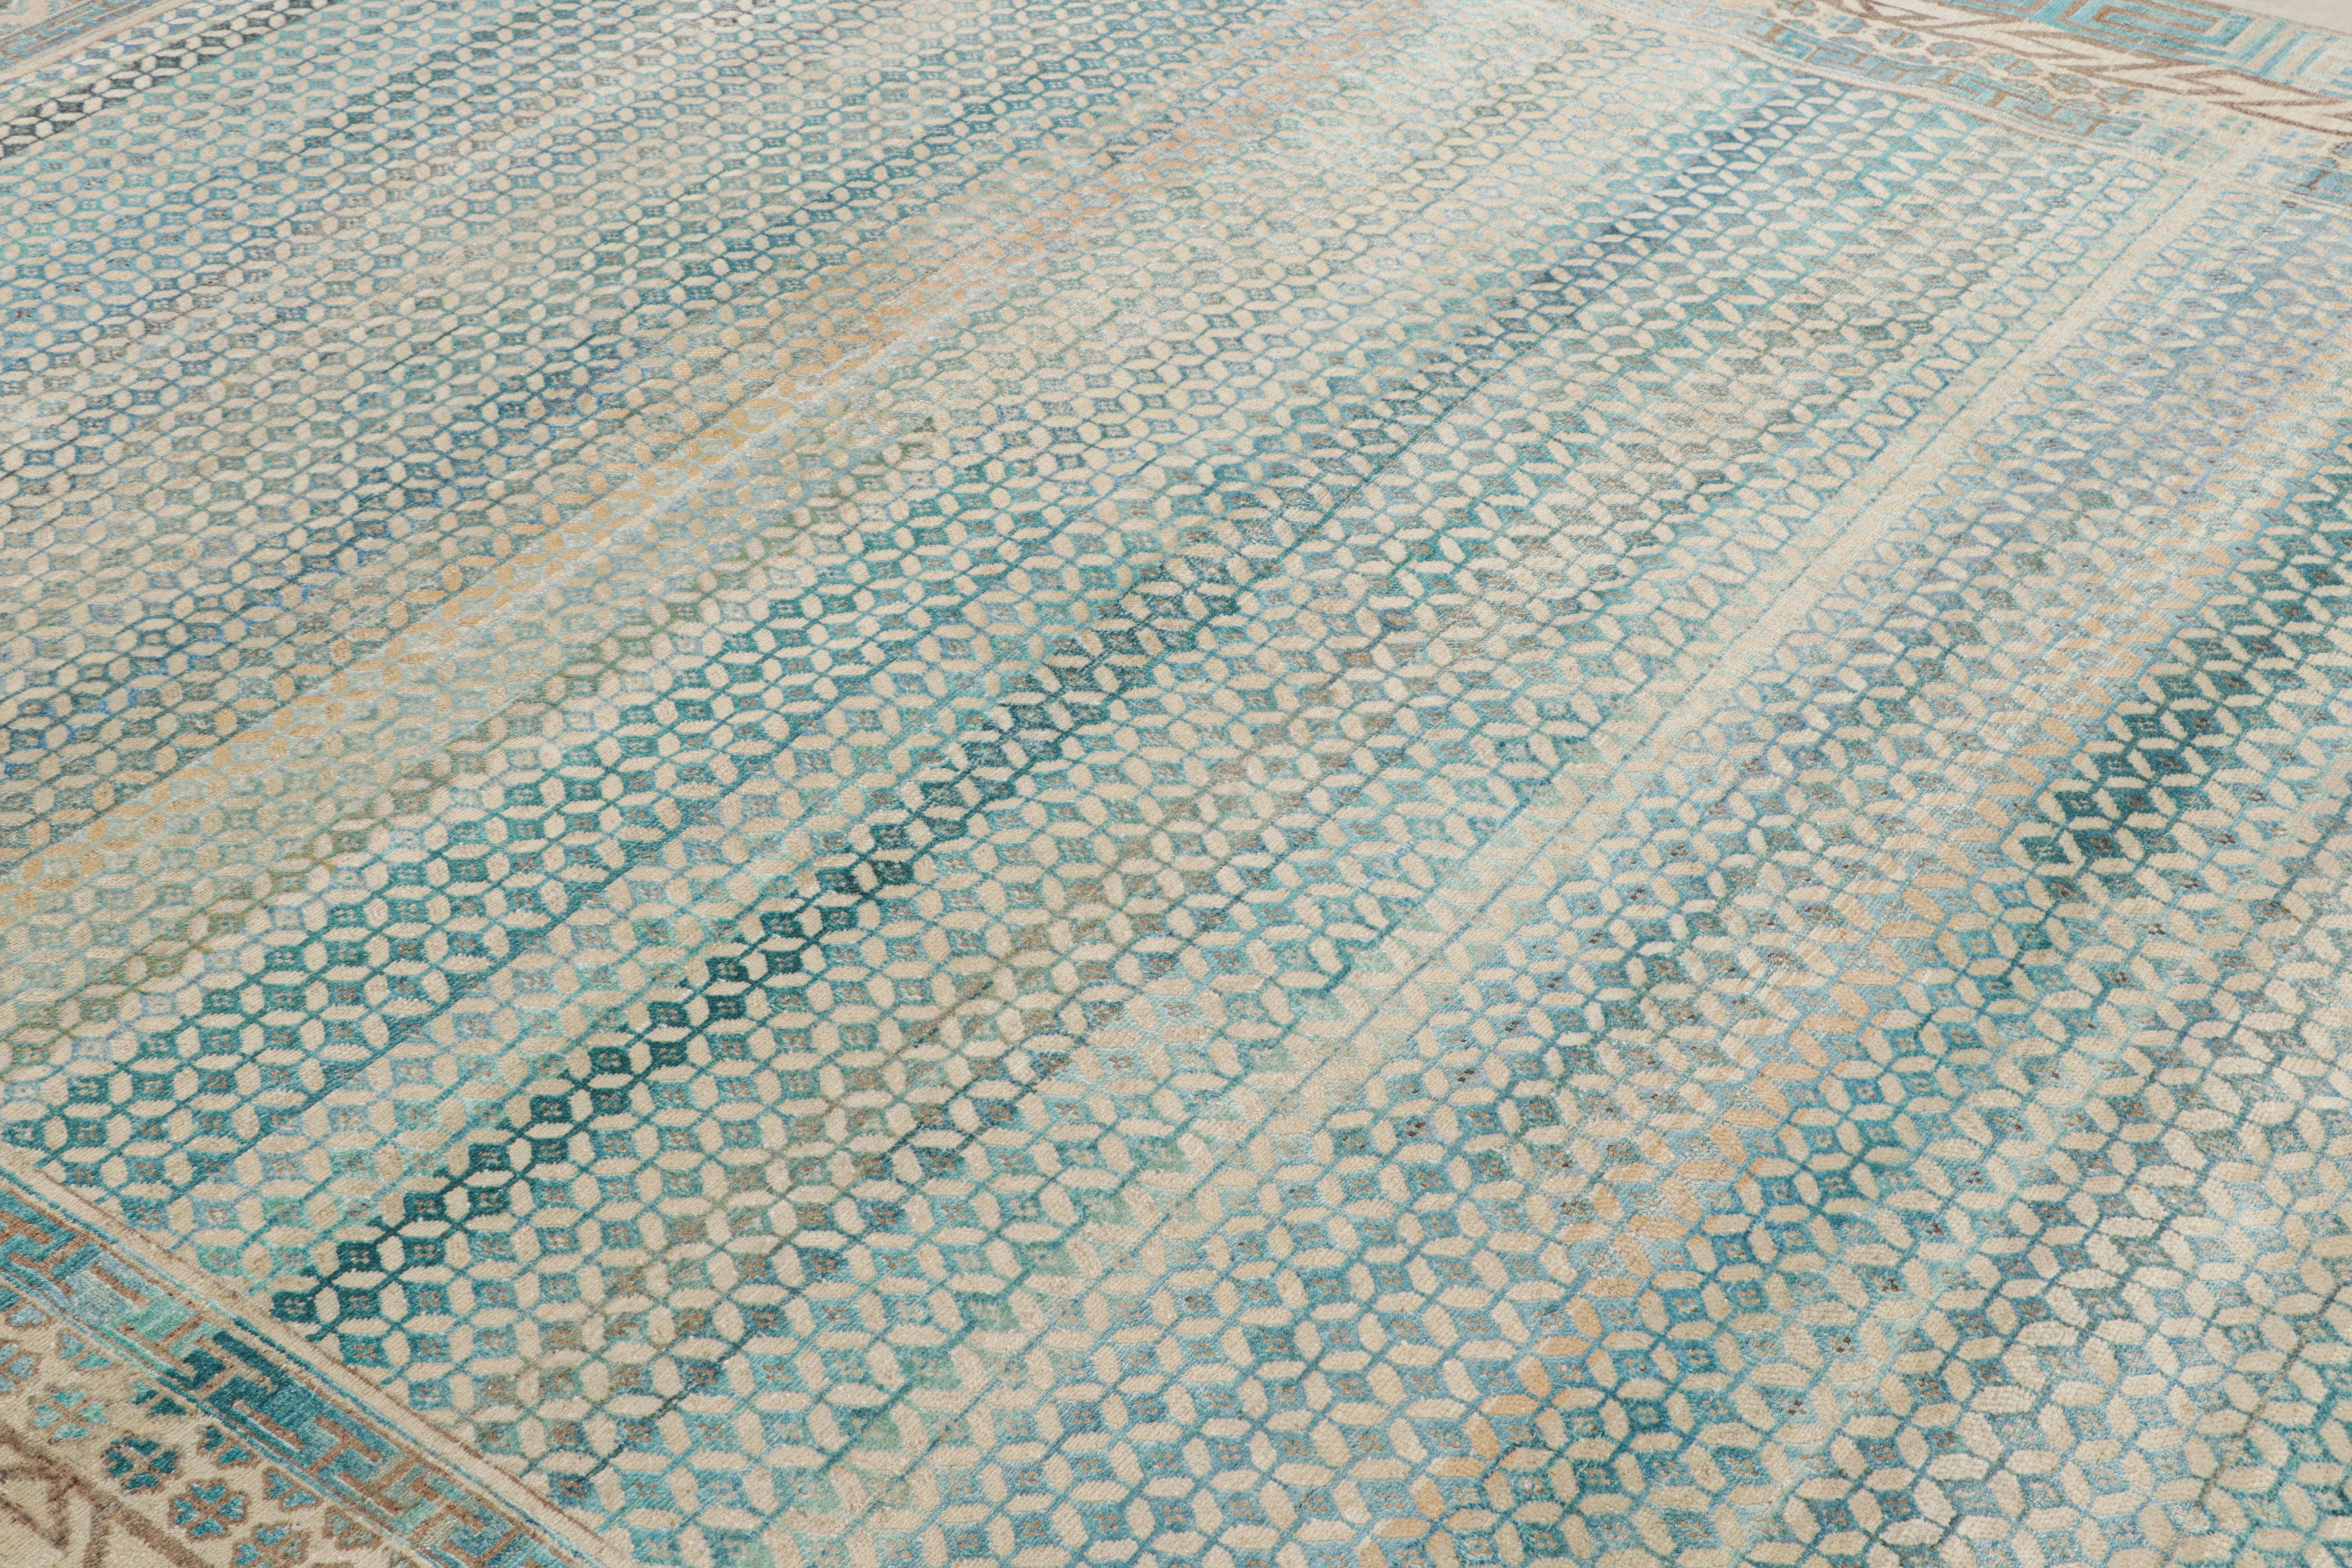 Une nouvelle approche contemporaine audacieuse des motifs de tapis classiques, Ce tapis moderne 9x12 de la Collection Modern Classics de Rug Kilim représente une nouvelle approche audacieuse des motifs de tapis classiques noués à la main dans un